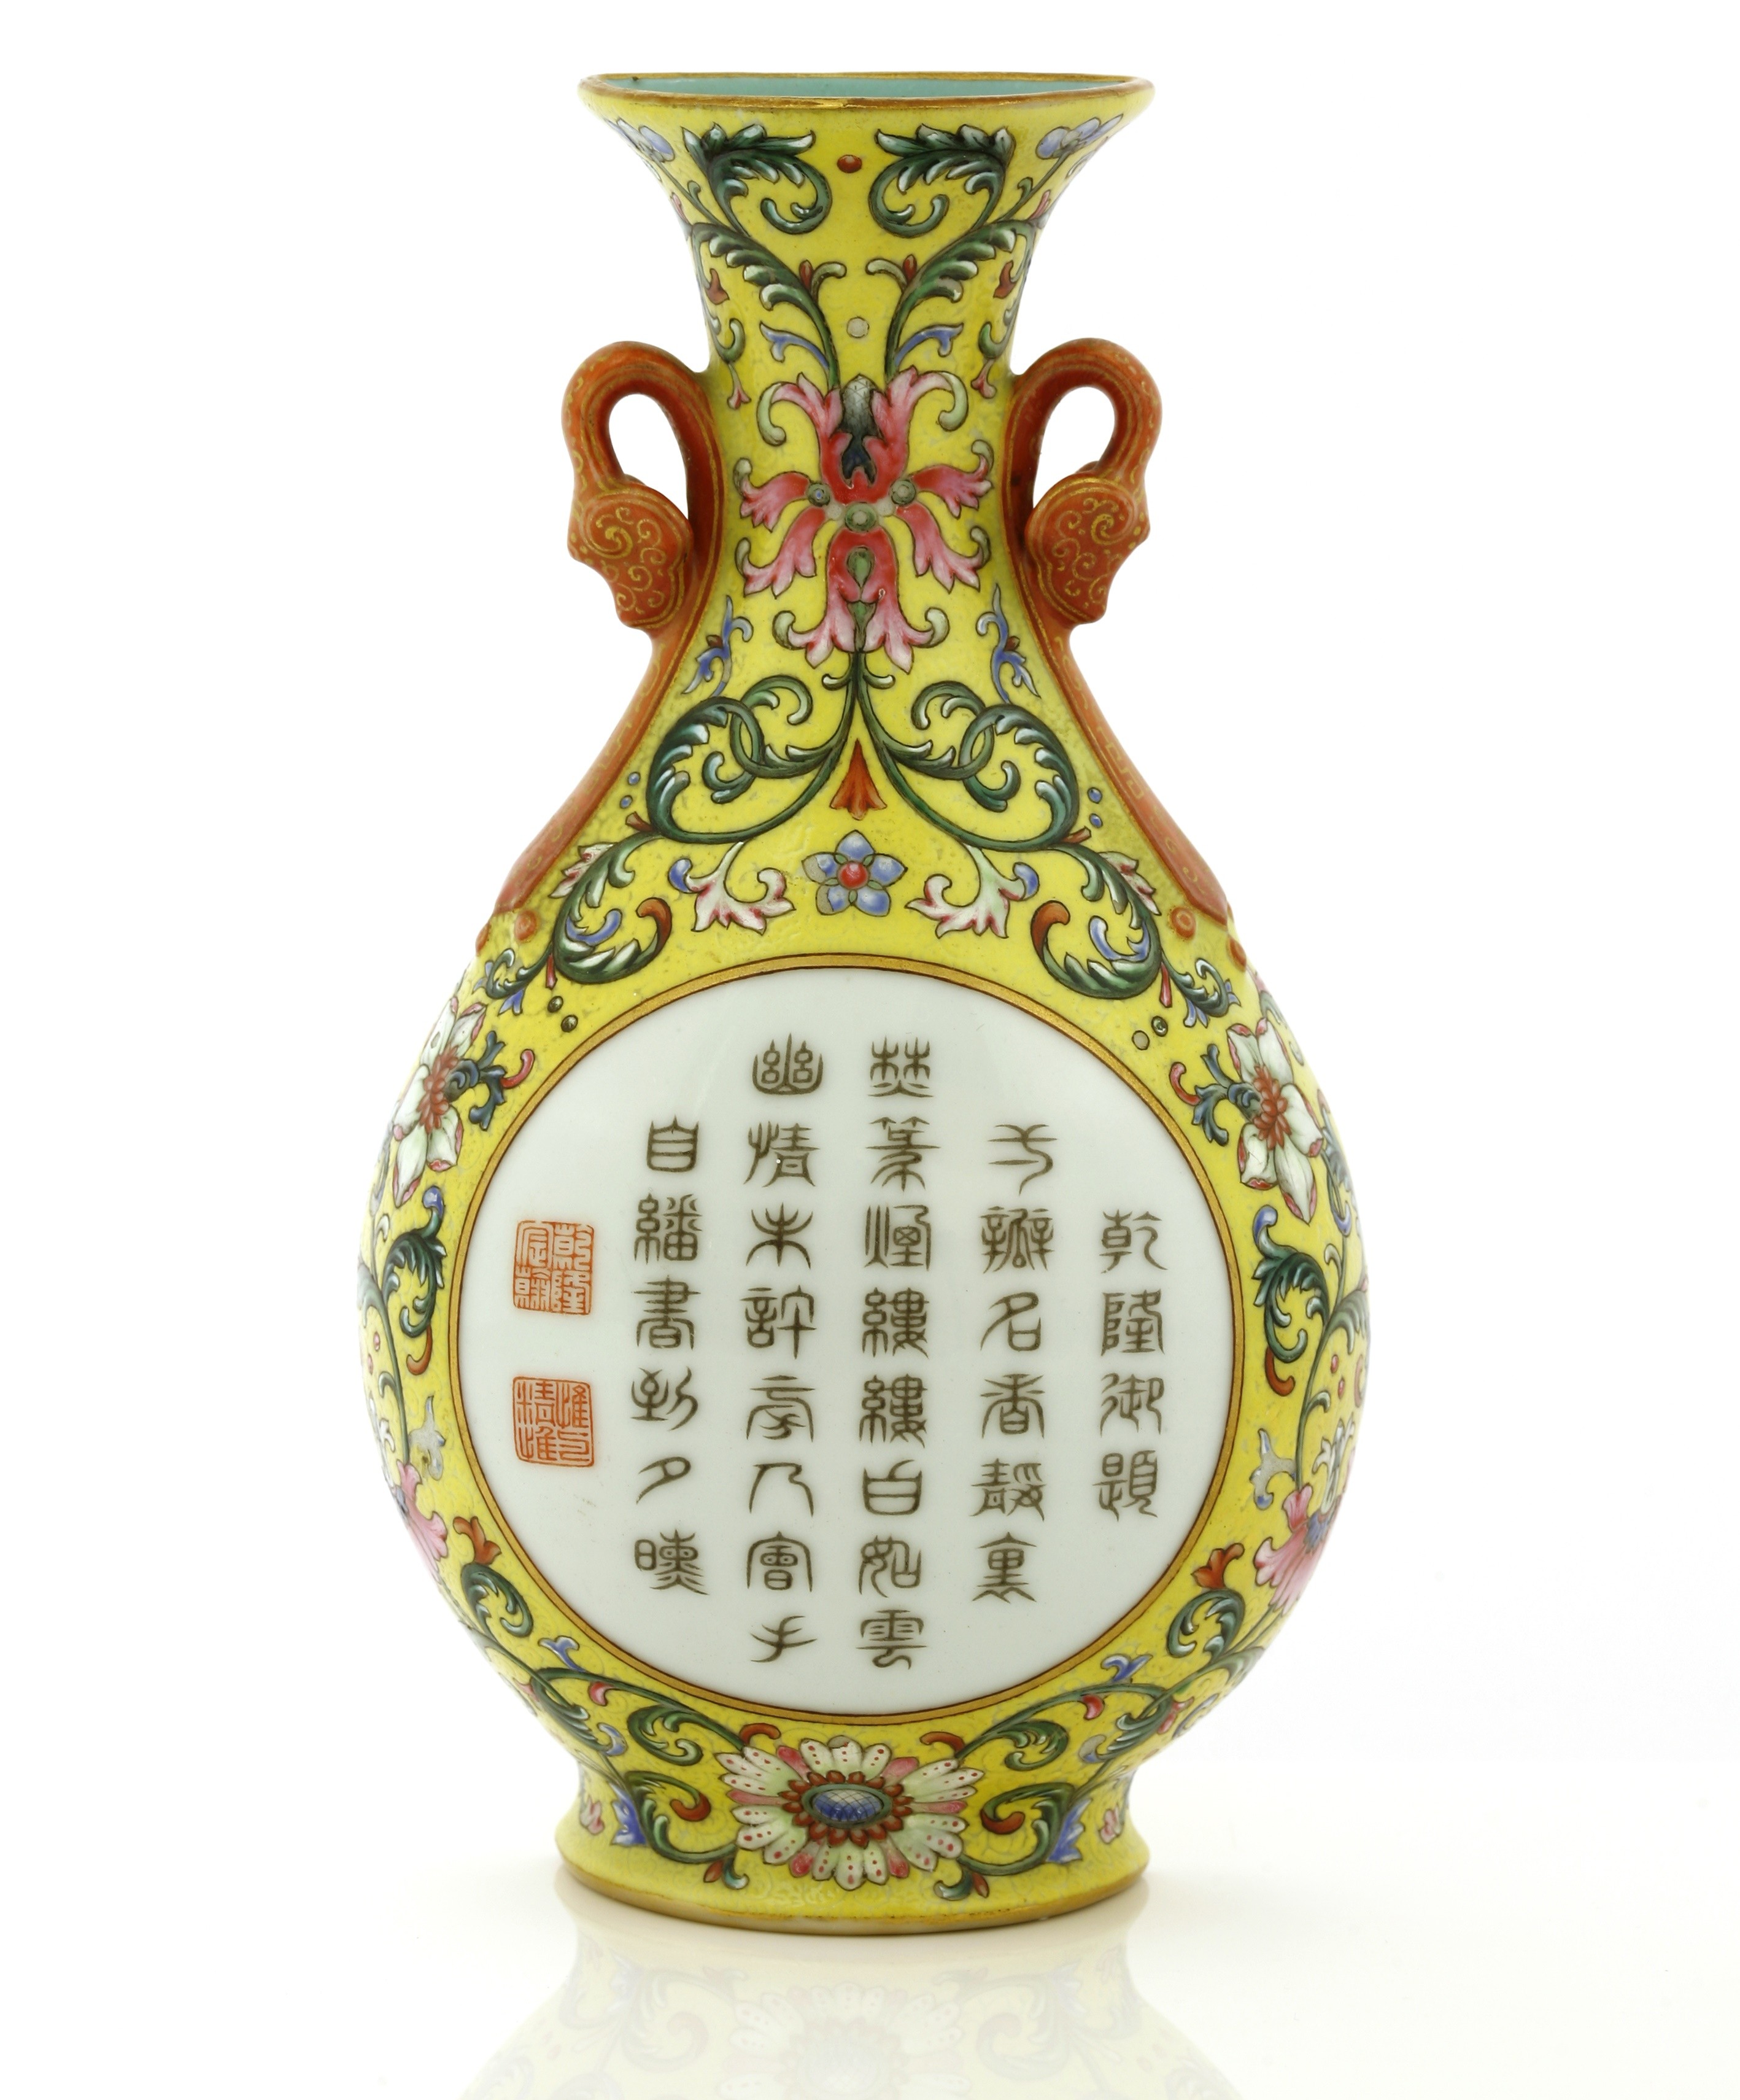 Artefato pertenceu a imperador chinês que viveu no século 18, afirmam especialistas (Foto: Reprodução Sworders)